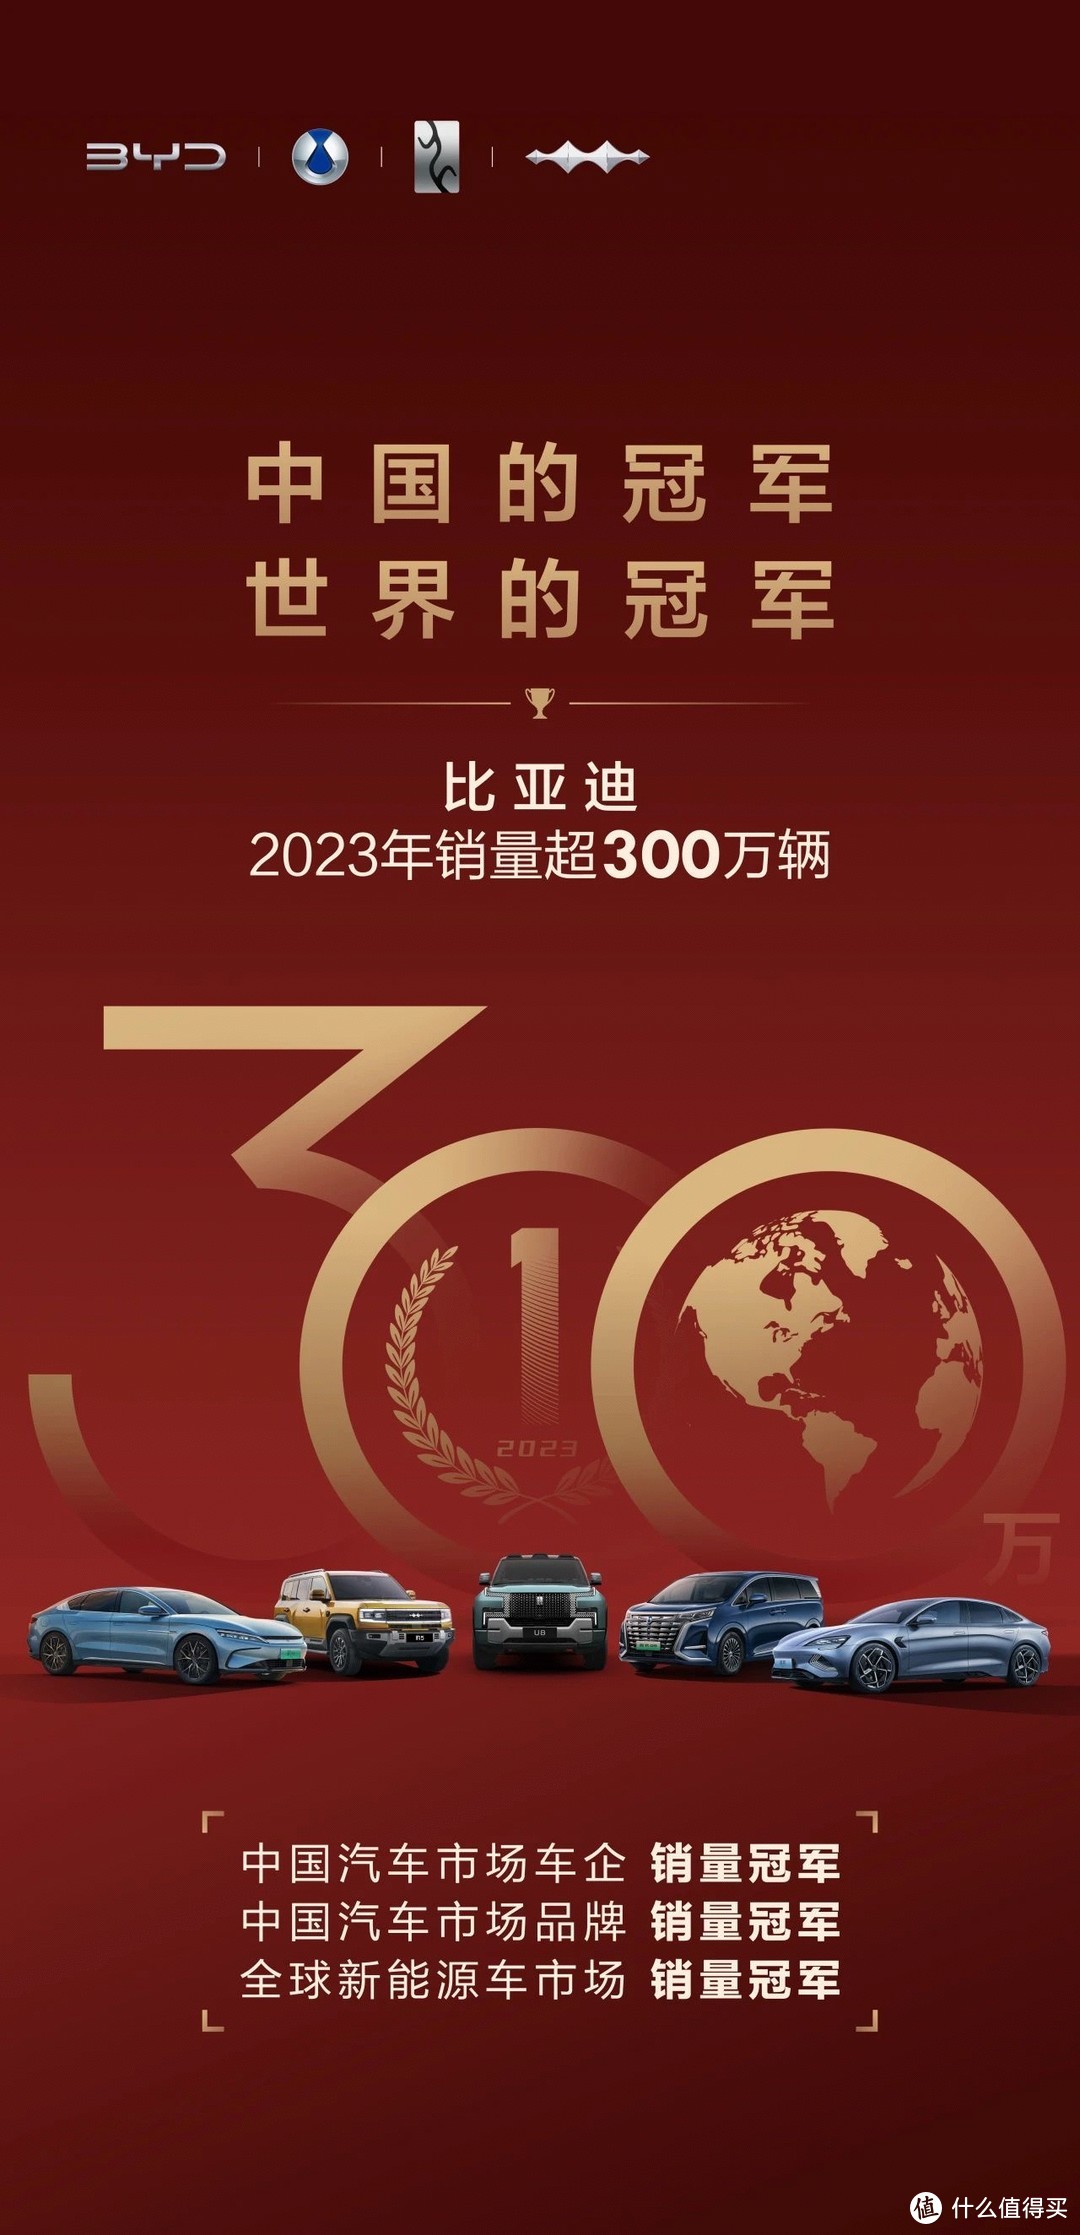 比亚迪年销售300万辆车，再次刷新中国汽车市场销售纪录！